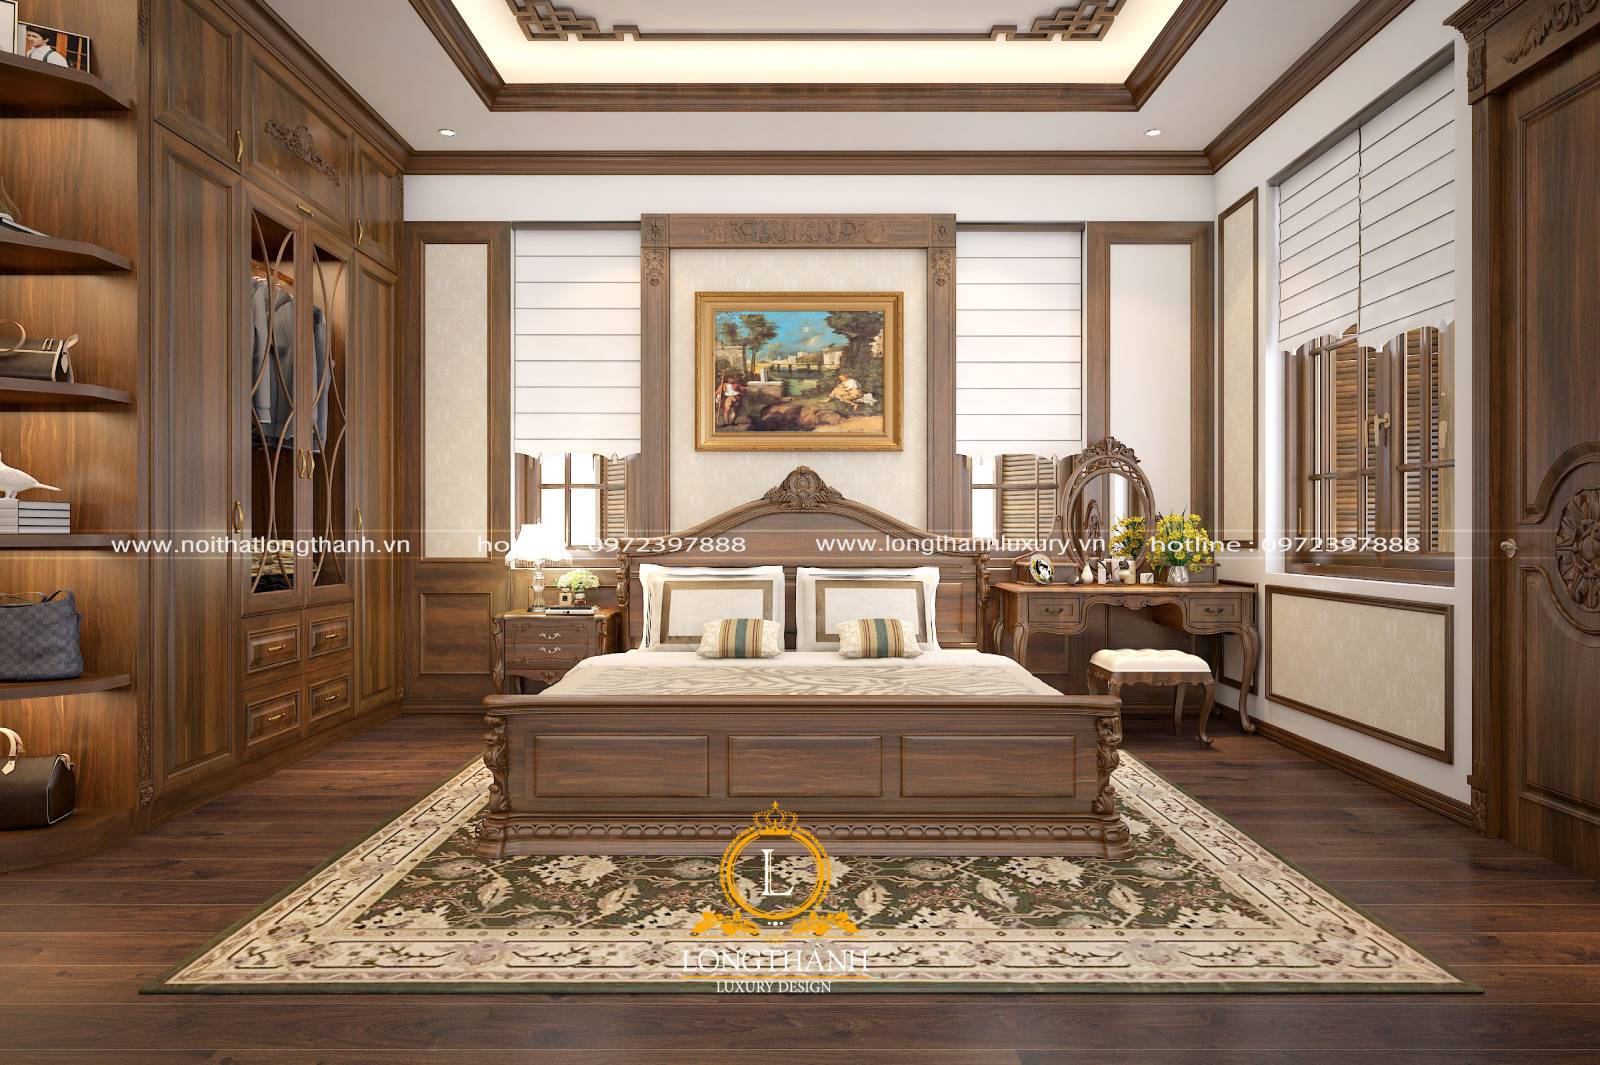 Thiết kế nội thất phòng ngủ tân cổ điển cần lưu ý tới sự tiện nghi và màu sắc